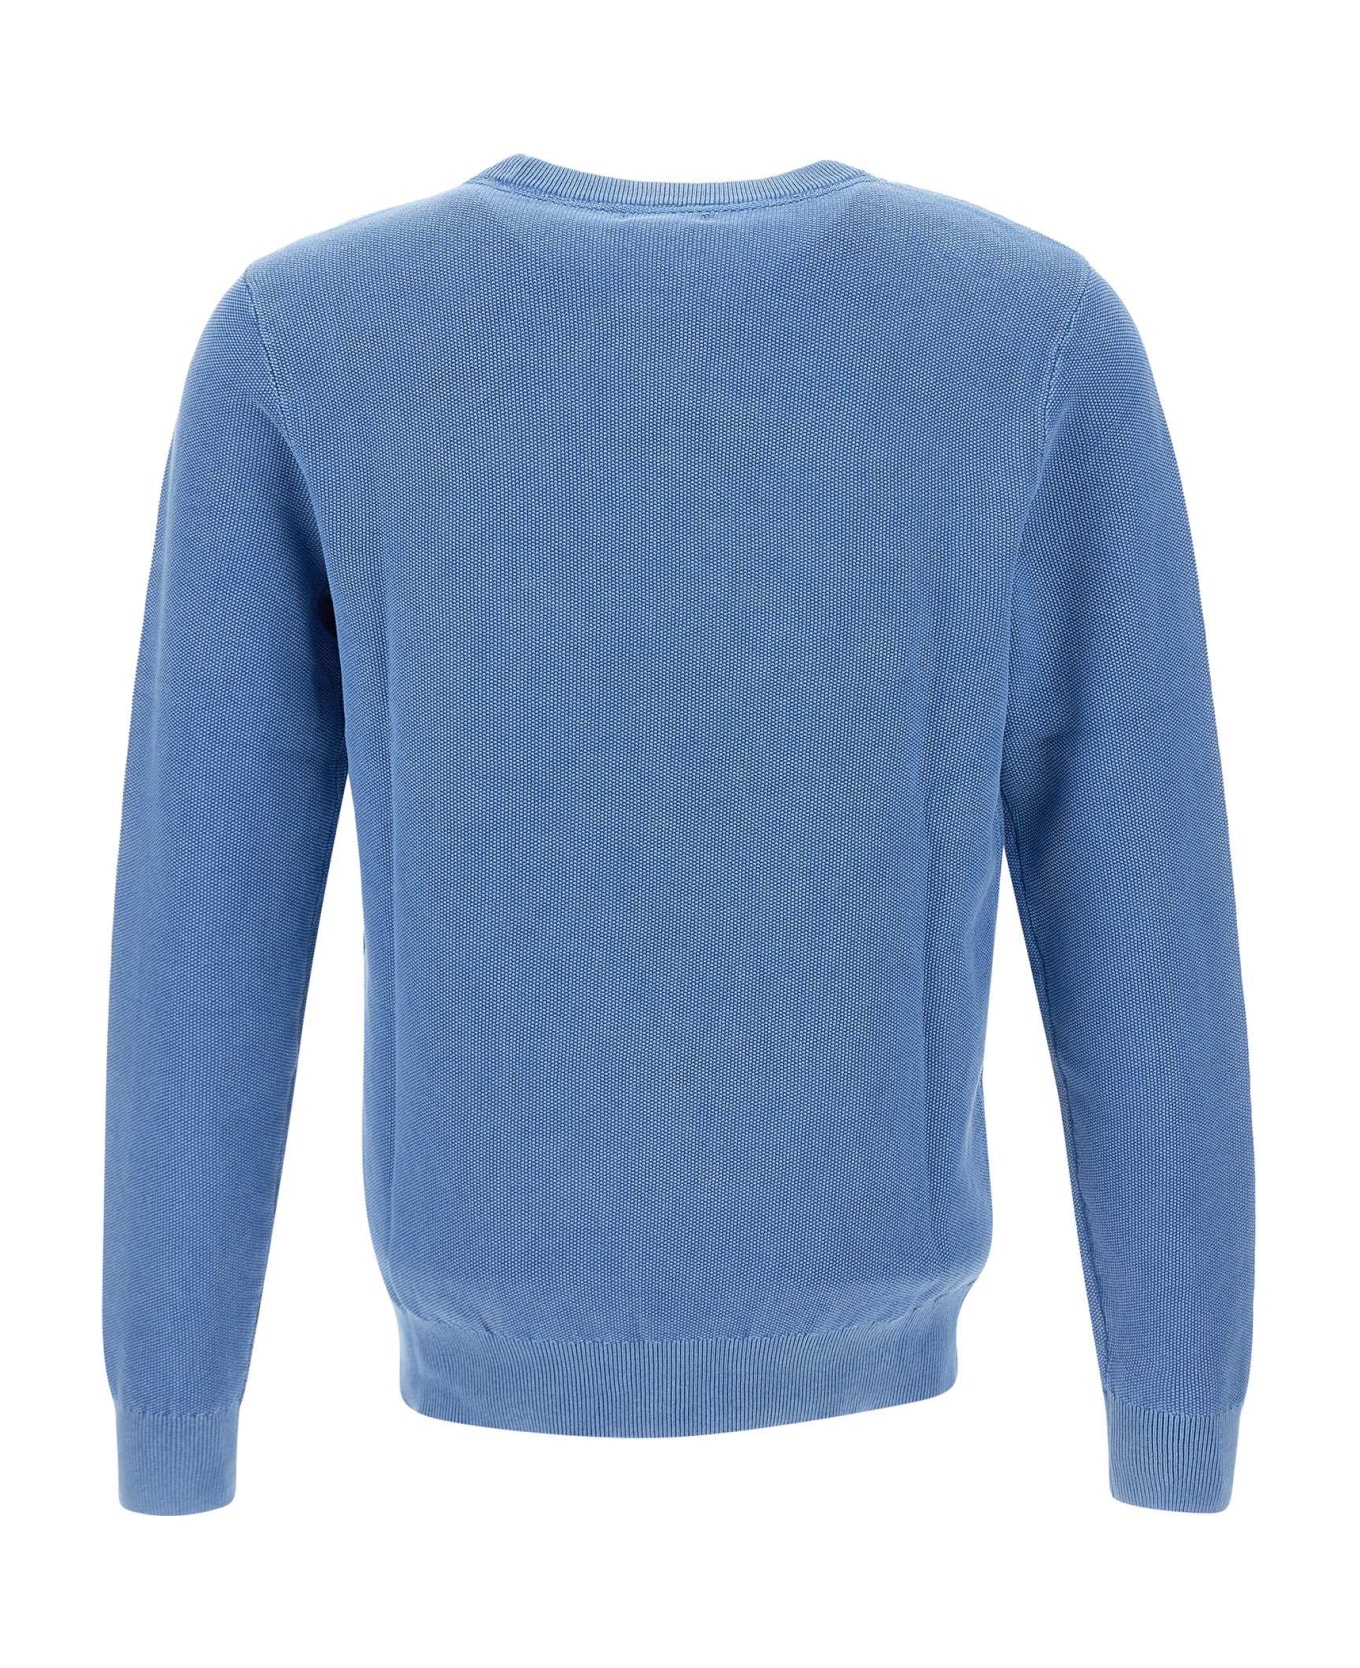 Sun 68 'round Vintage' Sweater Cotton Sweater - AVIO ニットウェア